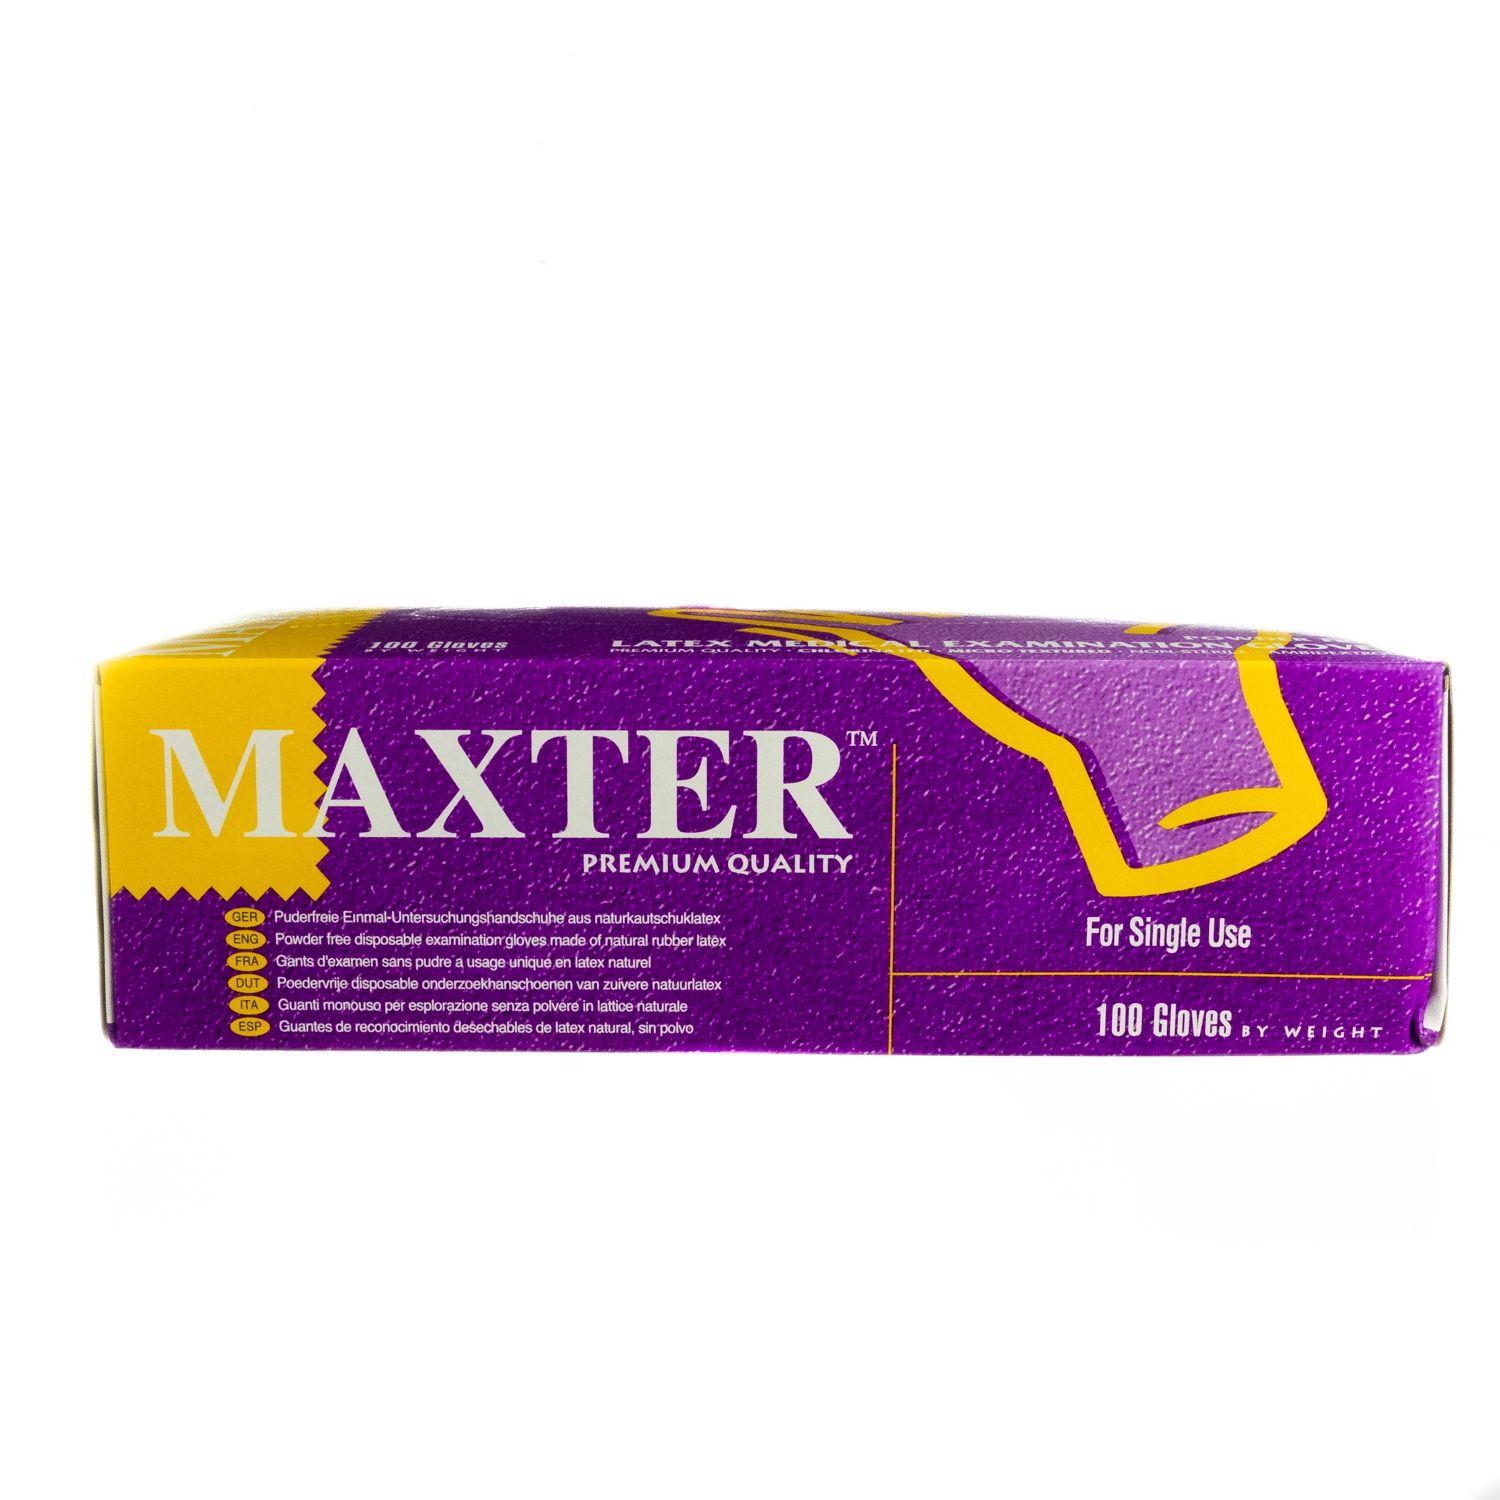 参比制剂,进口原料药,医药原料药 Maxter Powder Free Latex Gloves - XL (100)